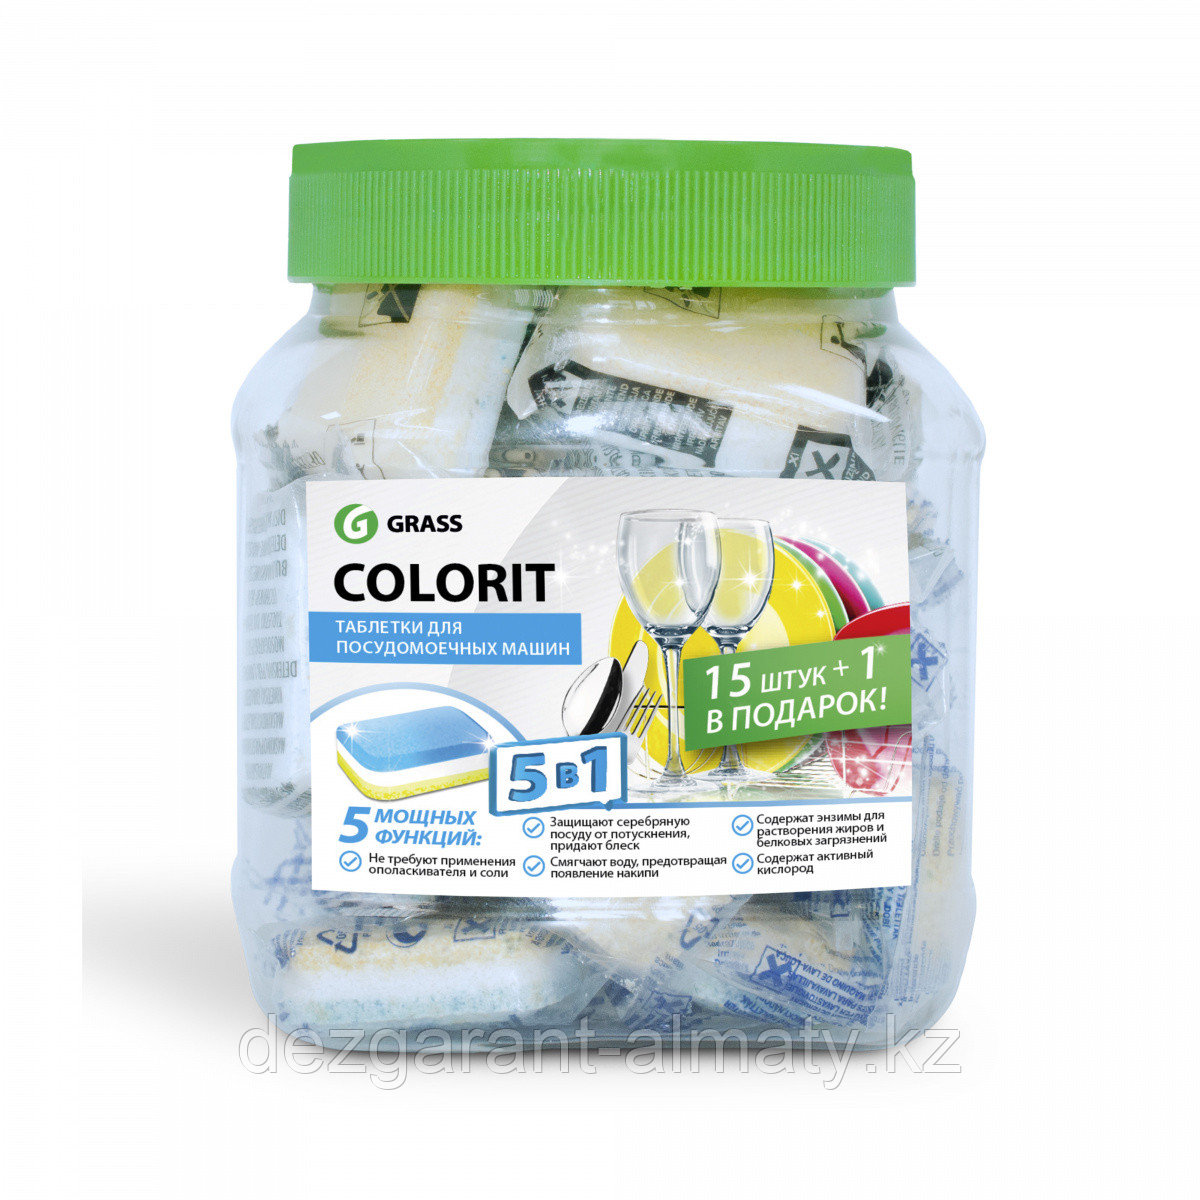 Colorit 5 в 1 Таблетки для посудомоечной машины (банка 16 шт)